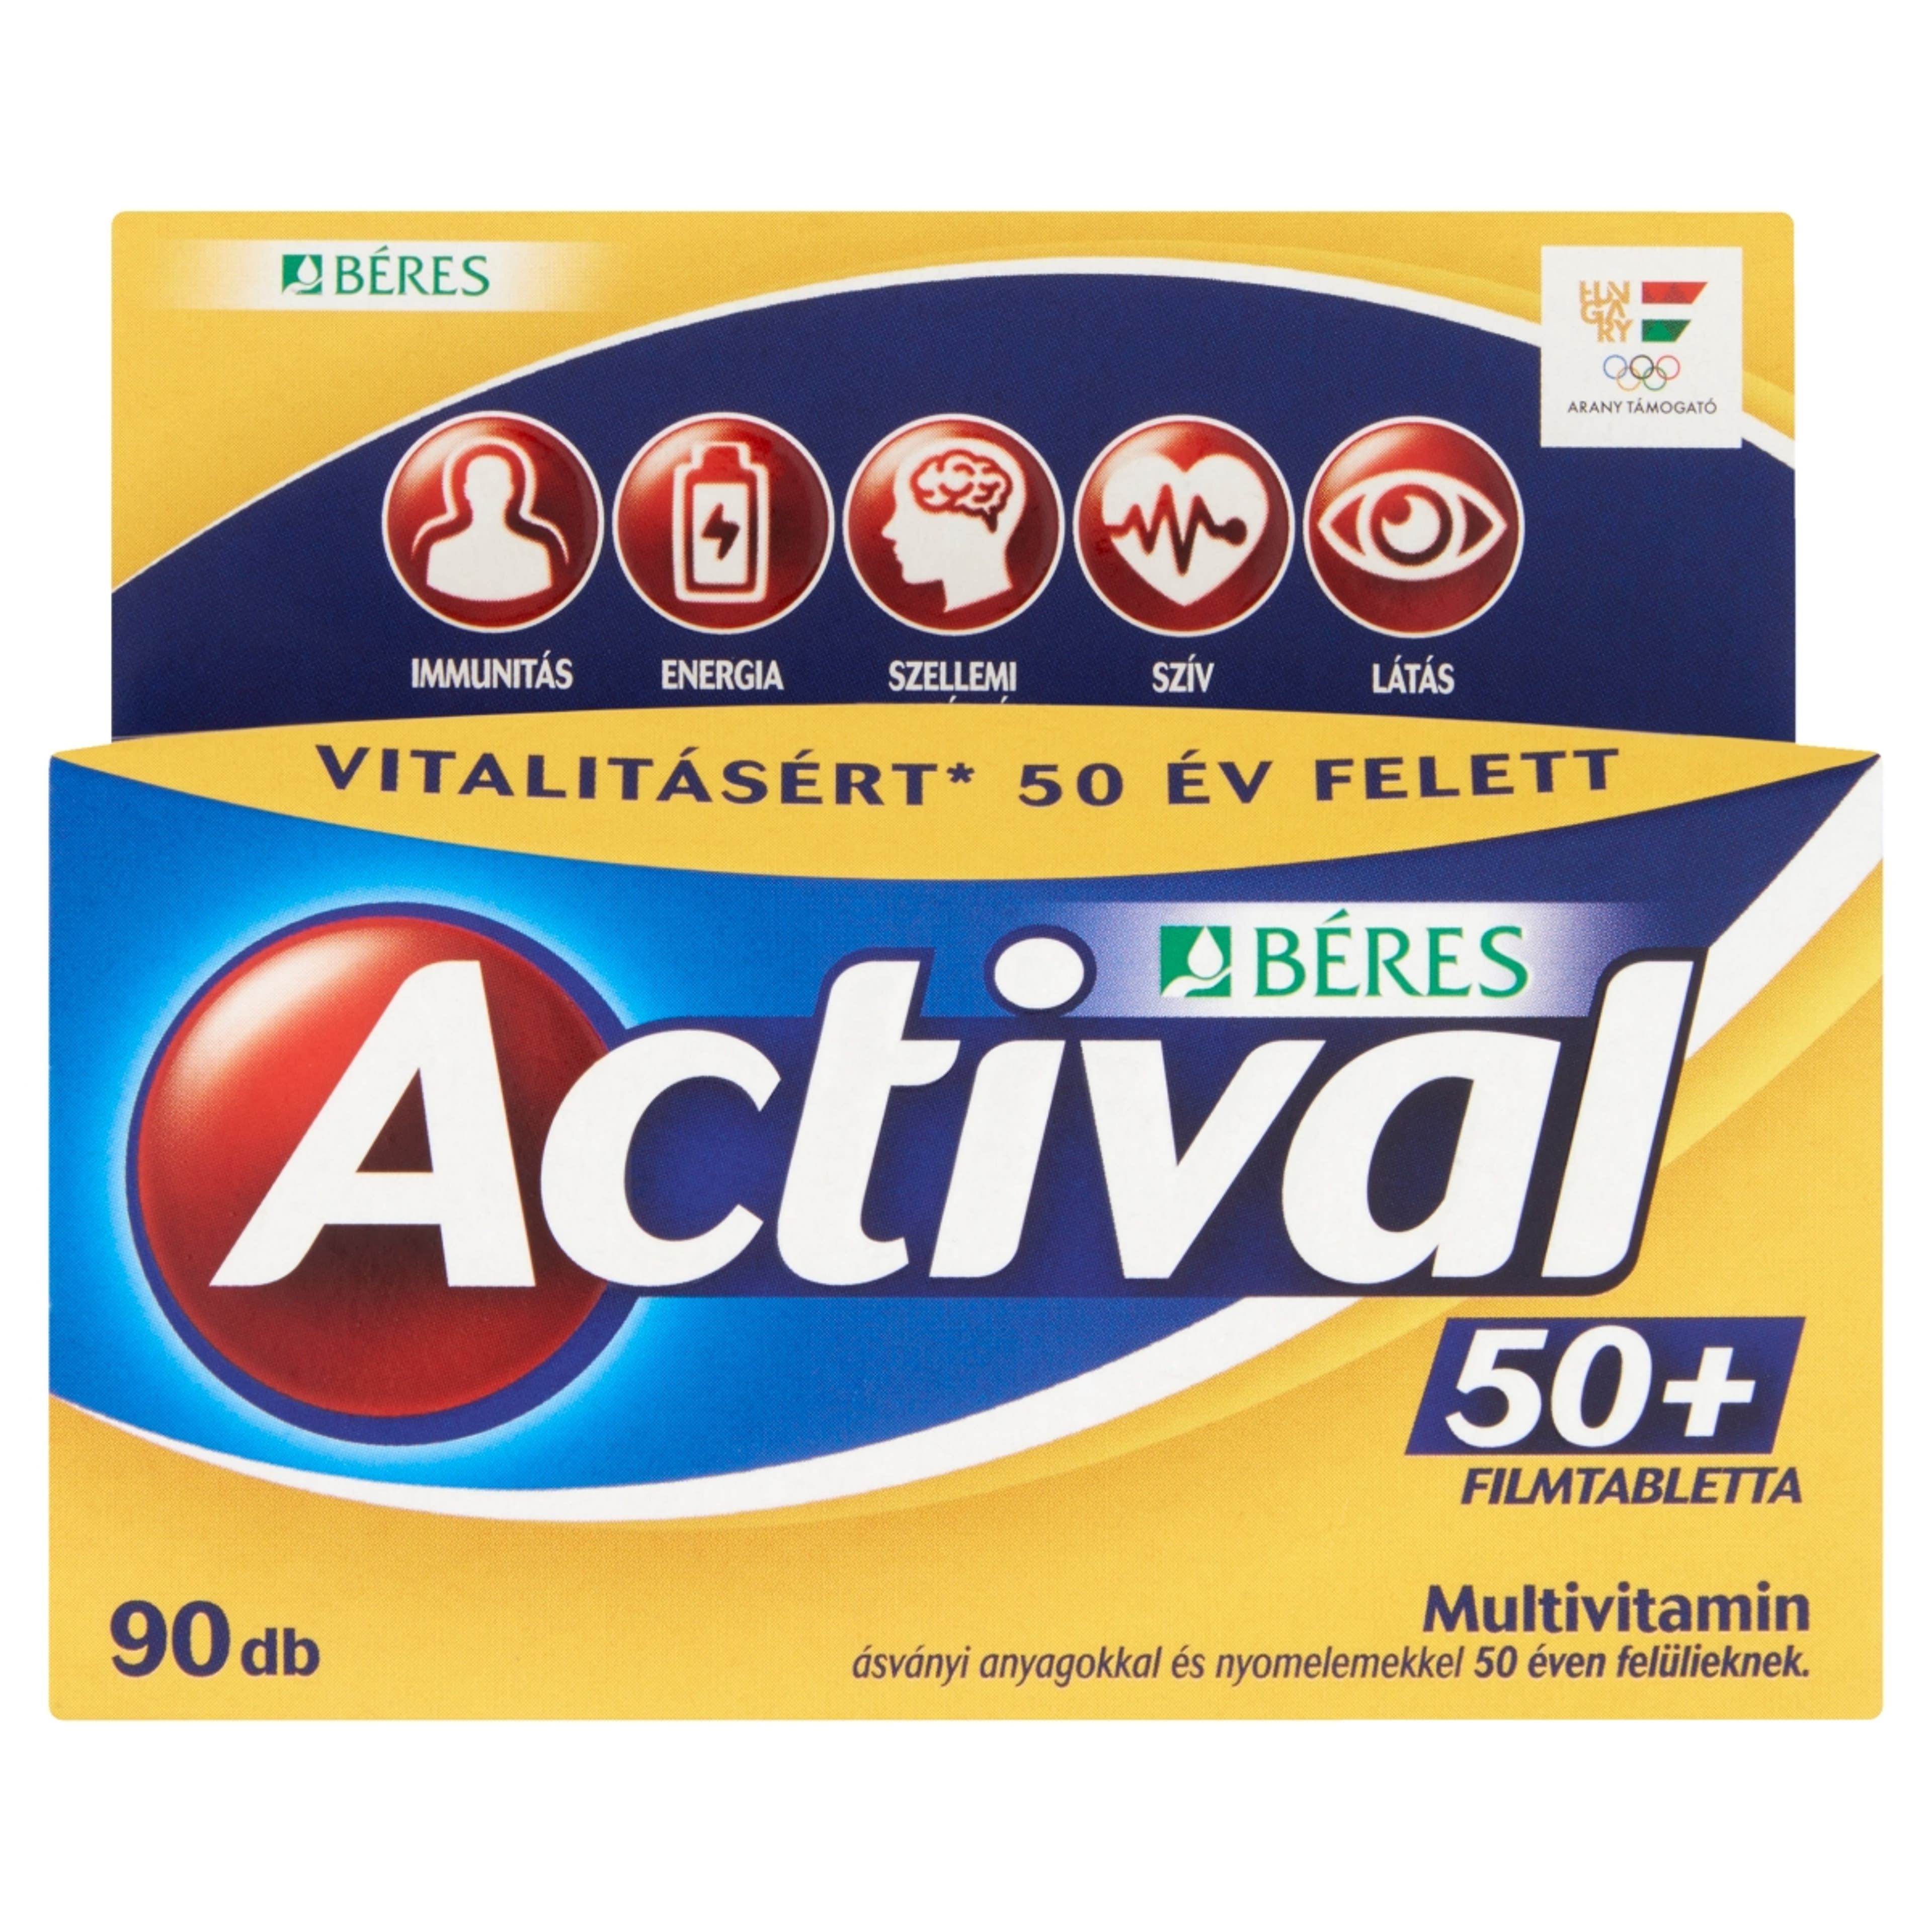 Actival 50+ filmtabletta - 90 db